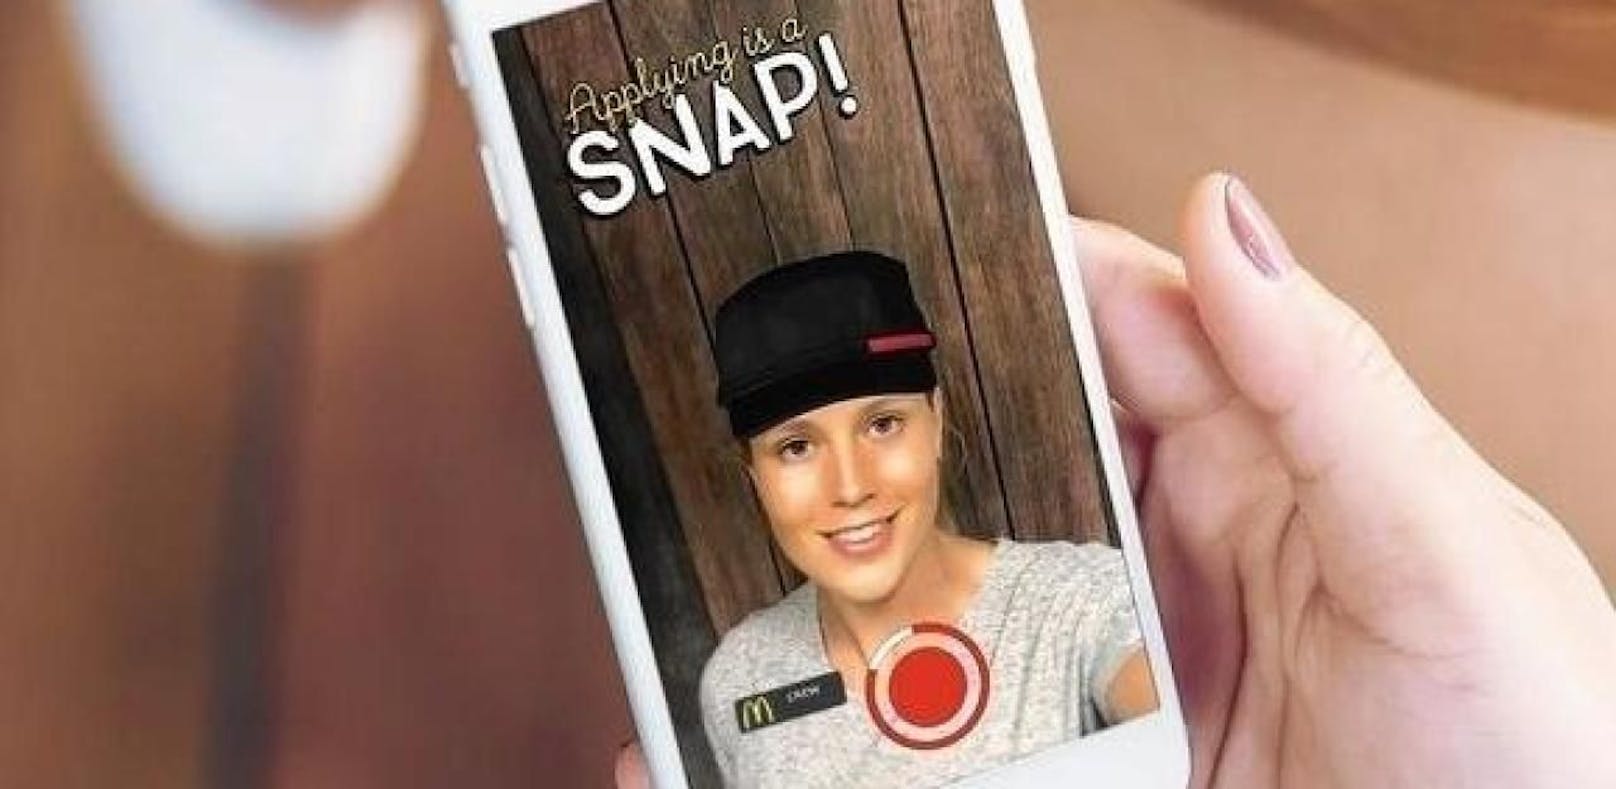 Bei McDonald's kann man sich per Snapchat vorstellen.